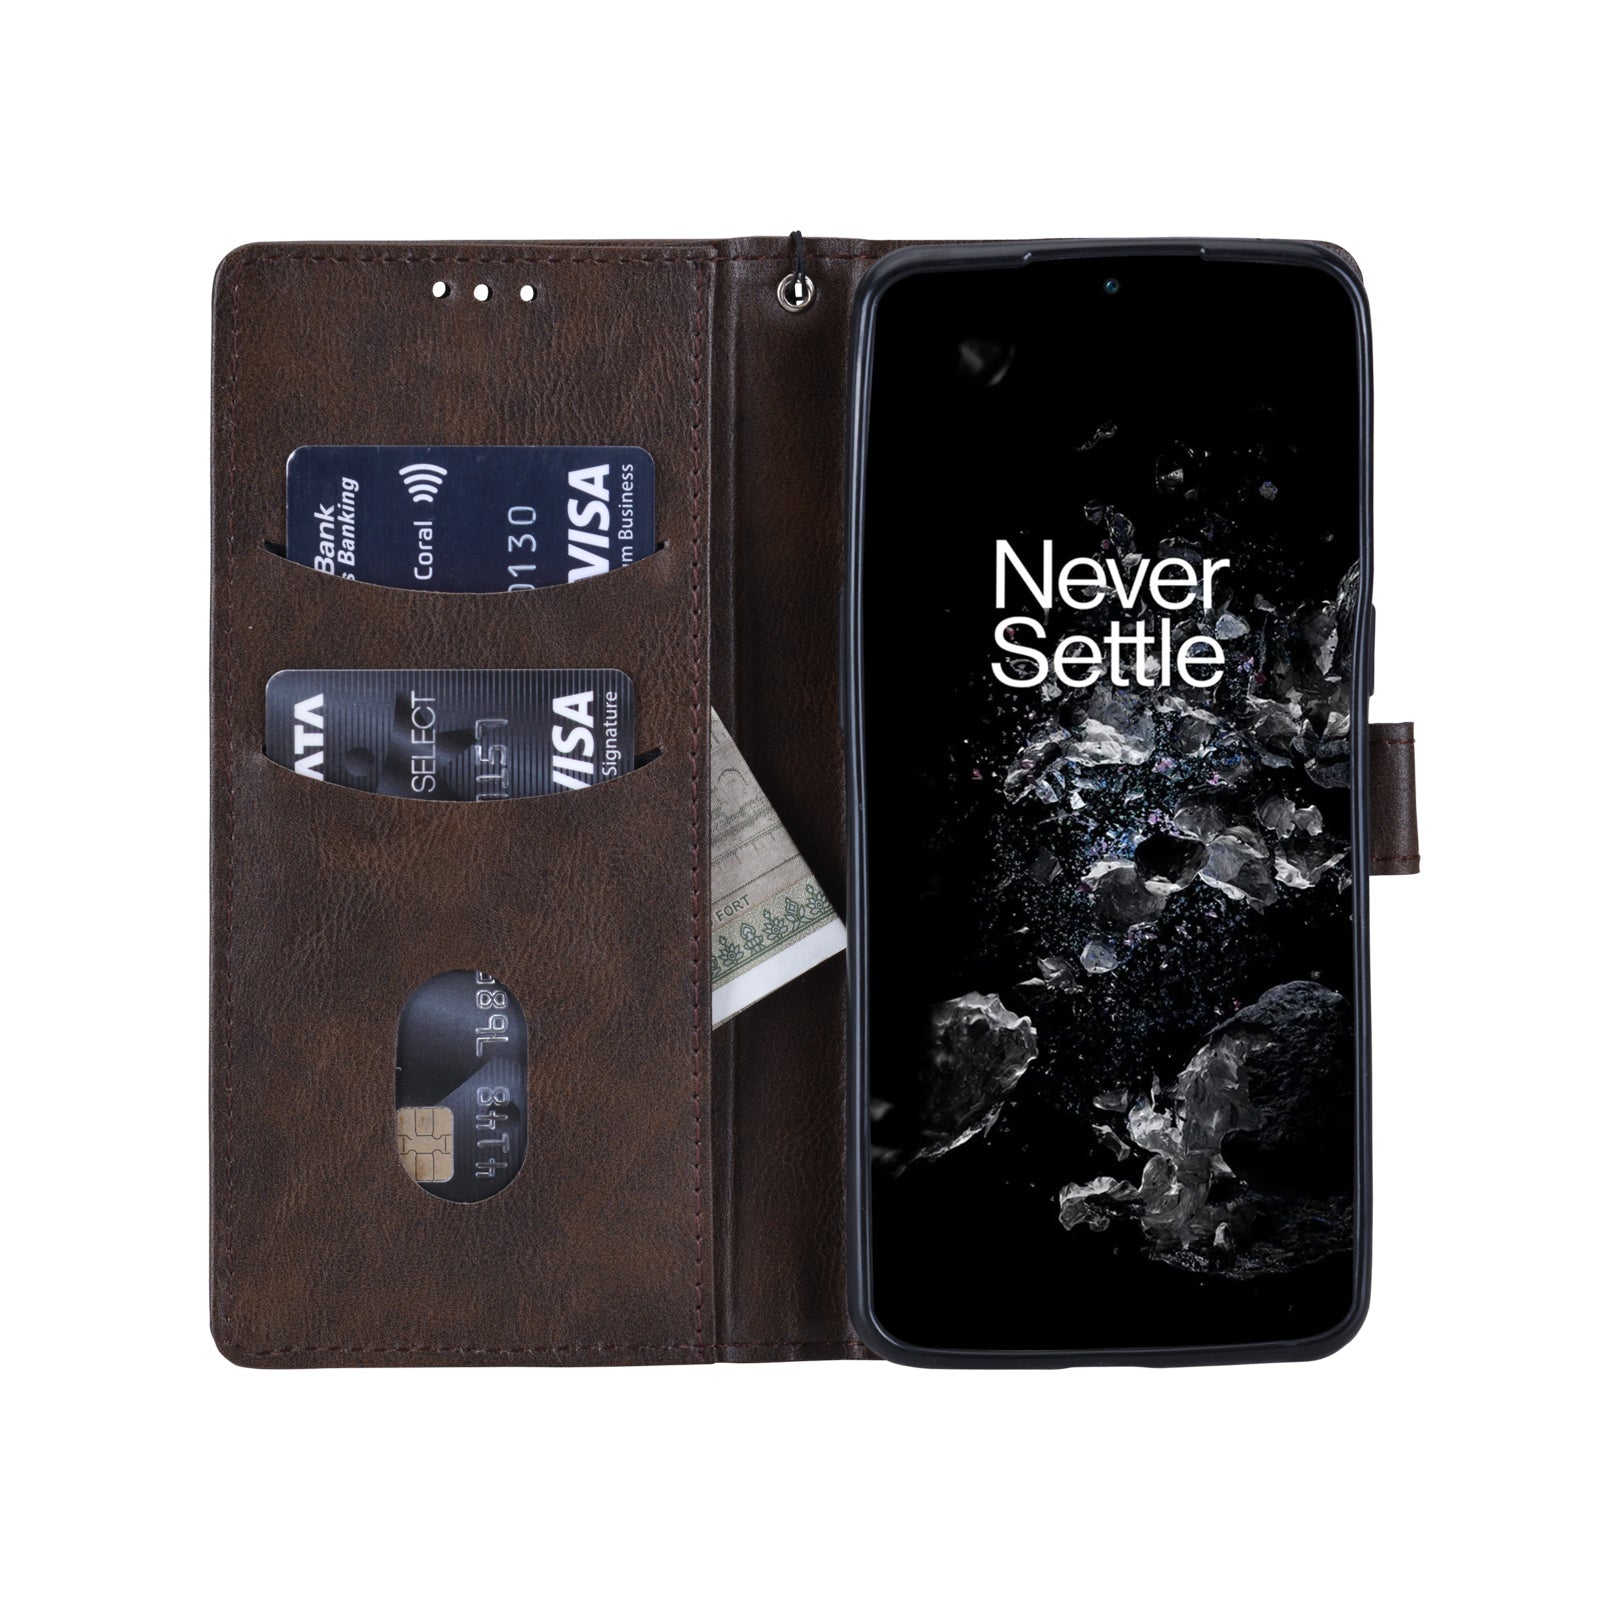 Bracevor Premium Design Flip Cover case for Oneplus 10T 5G